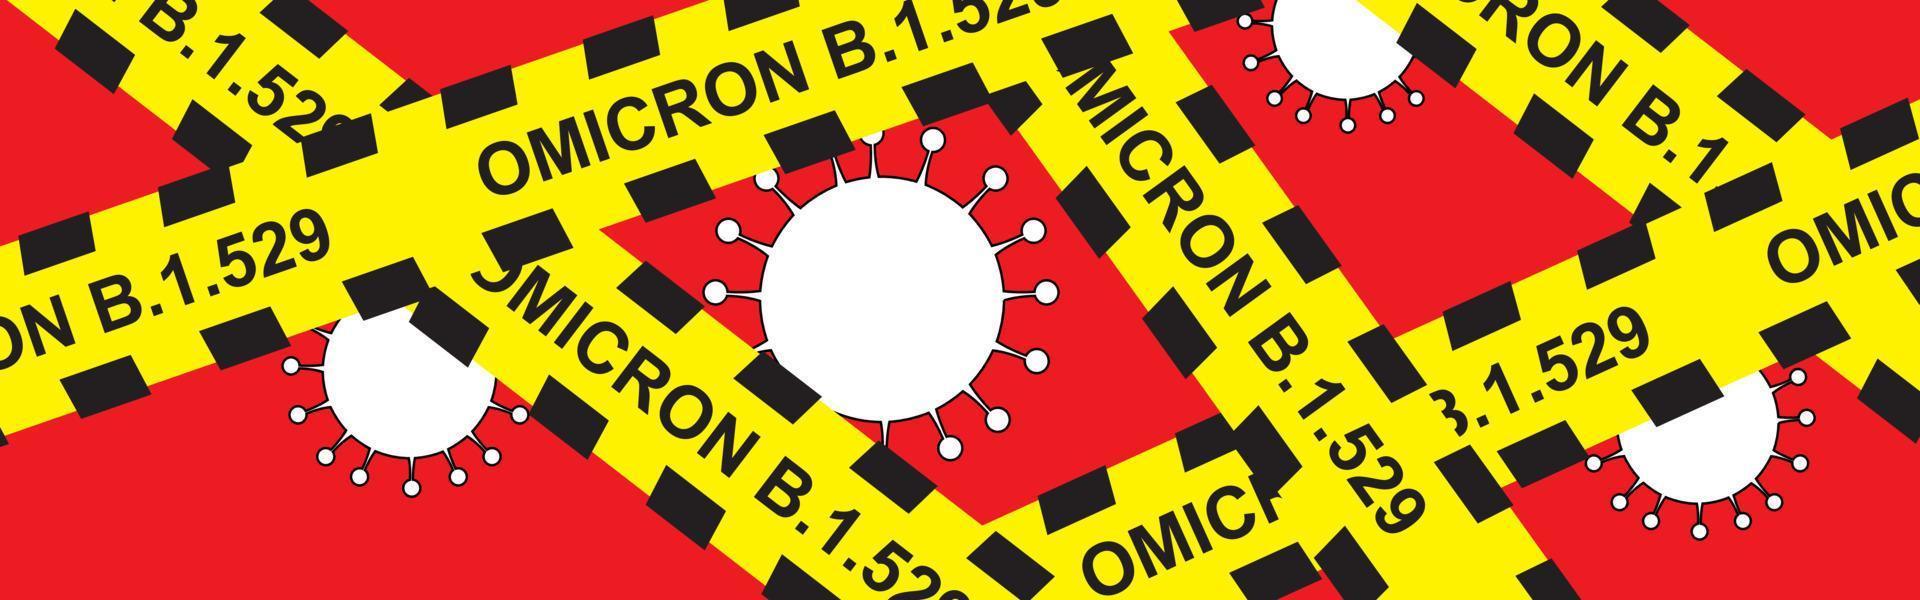 b.1.1.529 alerta omicron, nueva mutación del virus omicron de covid-19 vector